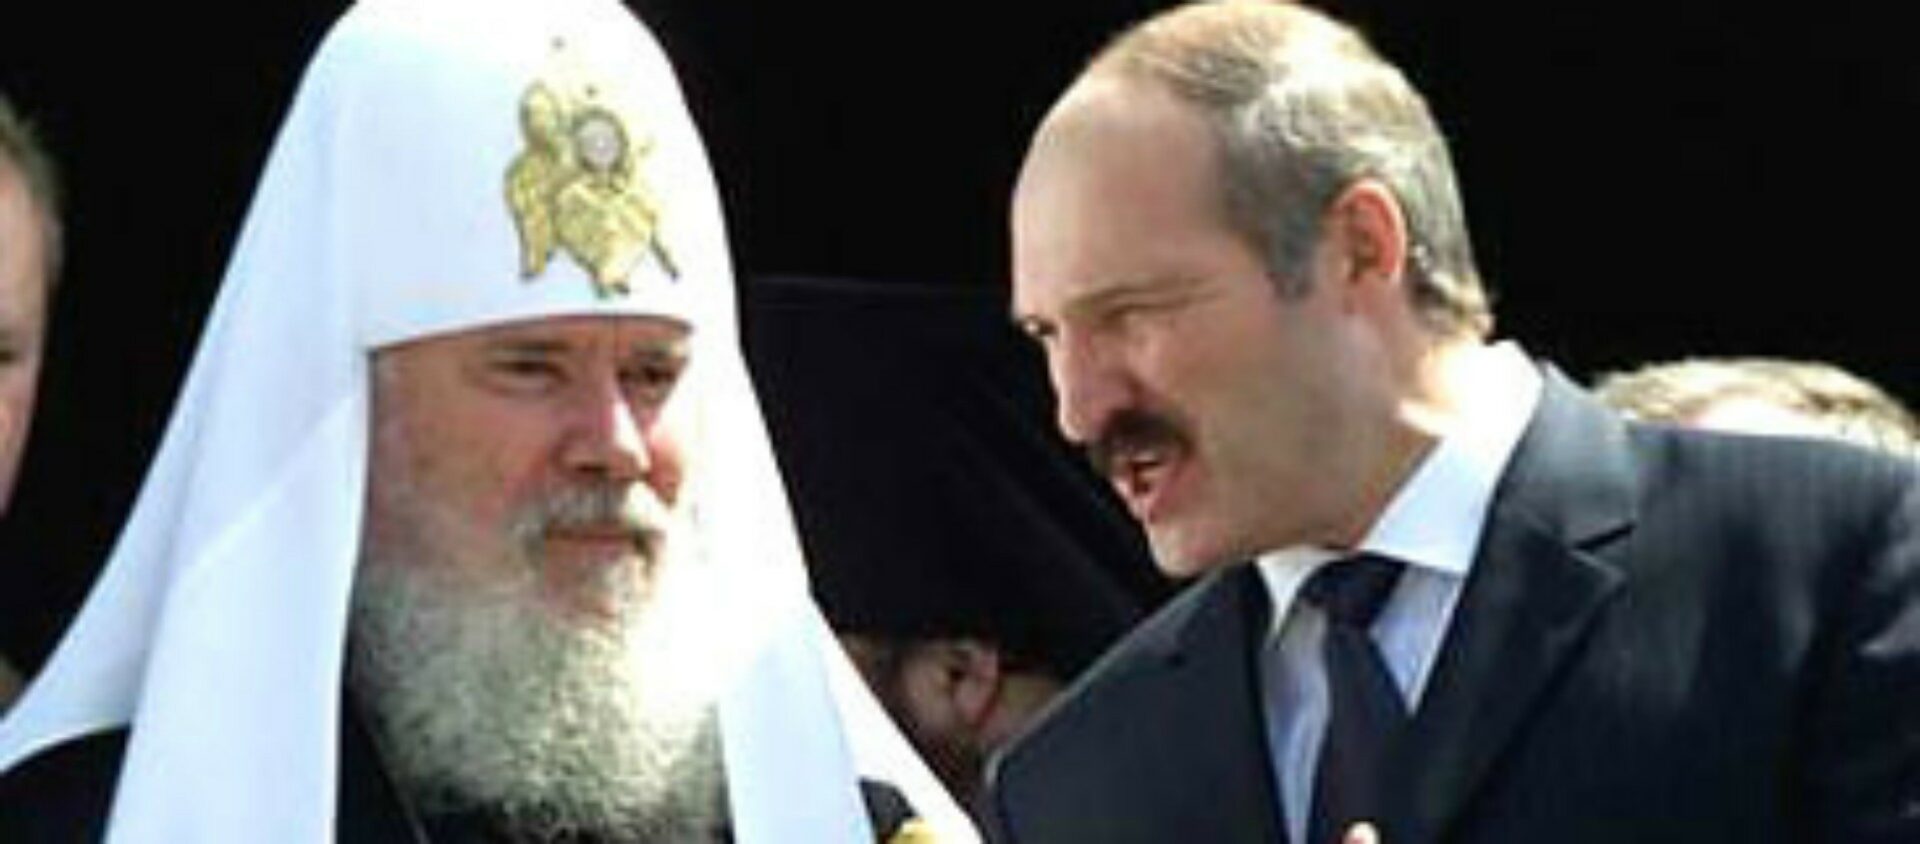 Le président biélorusse Alexandre Loukachenko affirme avoir de bonnes relations avec l'Eglise orthodoxe au Belarus  | © aquamber_lj Flickr 
